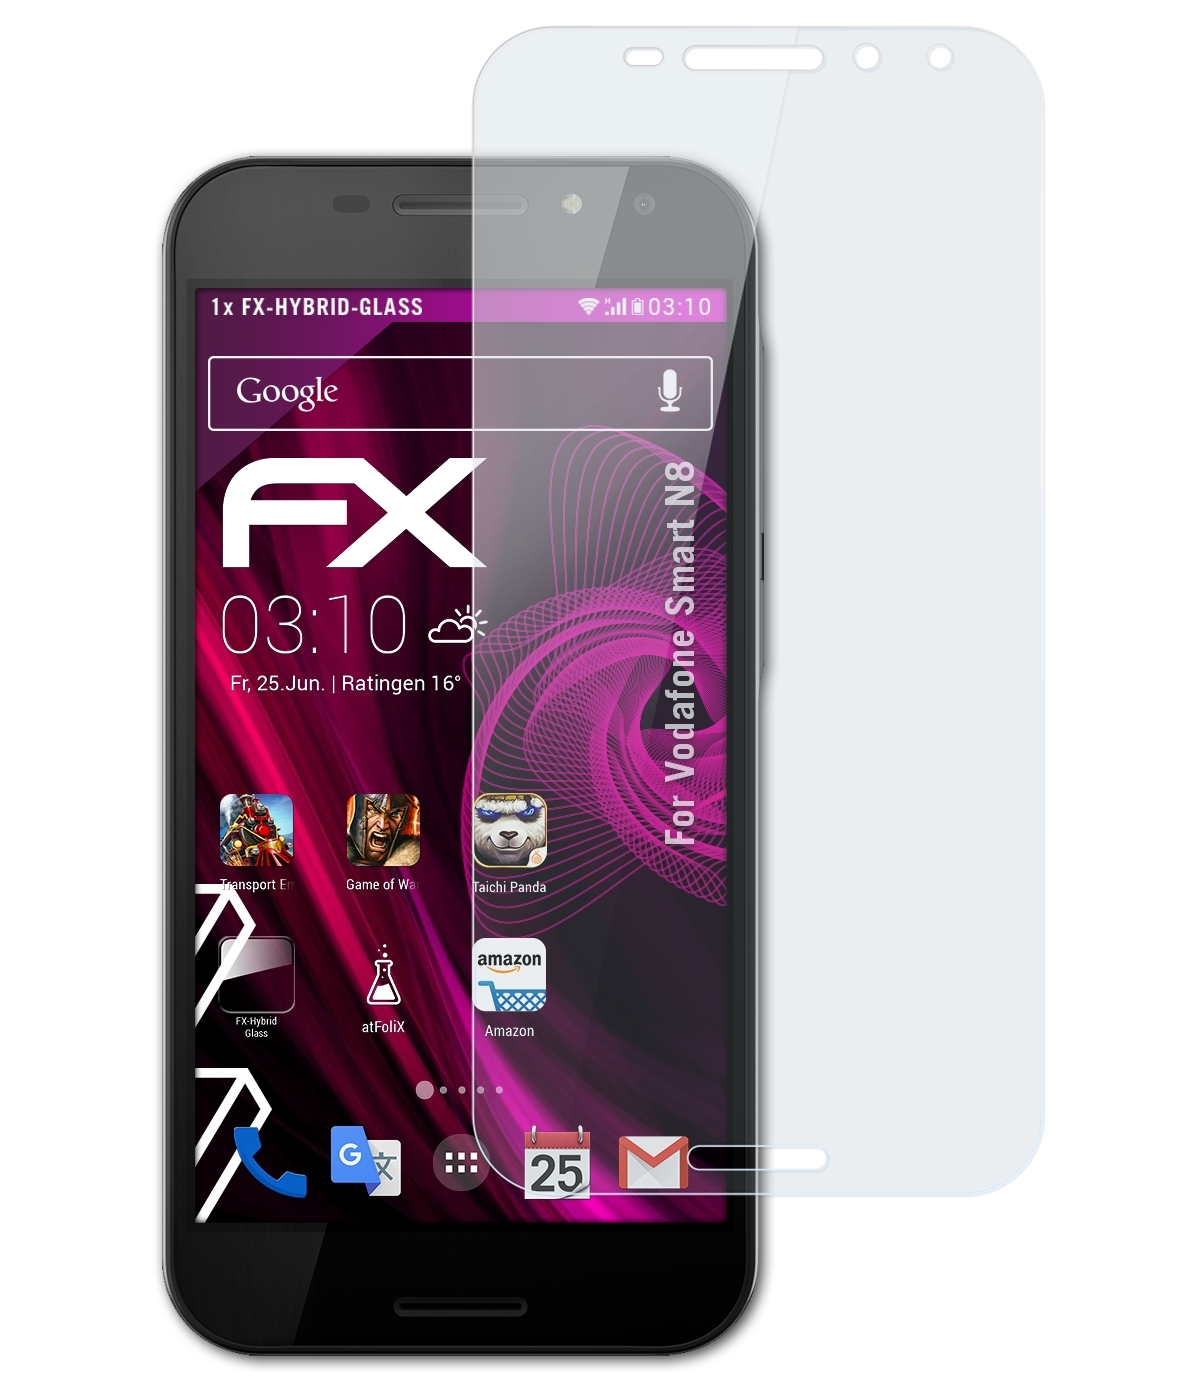 Smart N8) FX-Hybrid-Glass ATFOLIX Vodafone Schutzglas(für